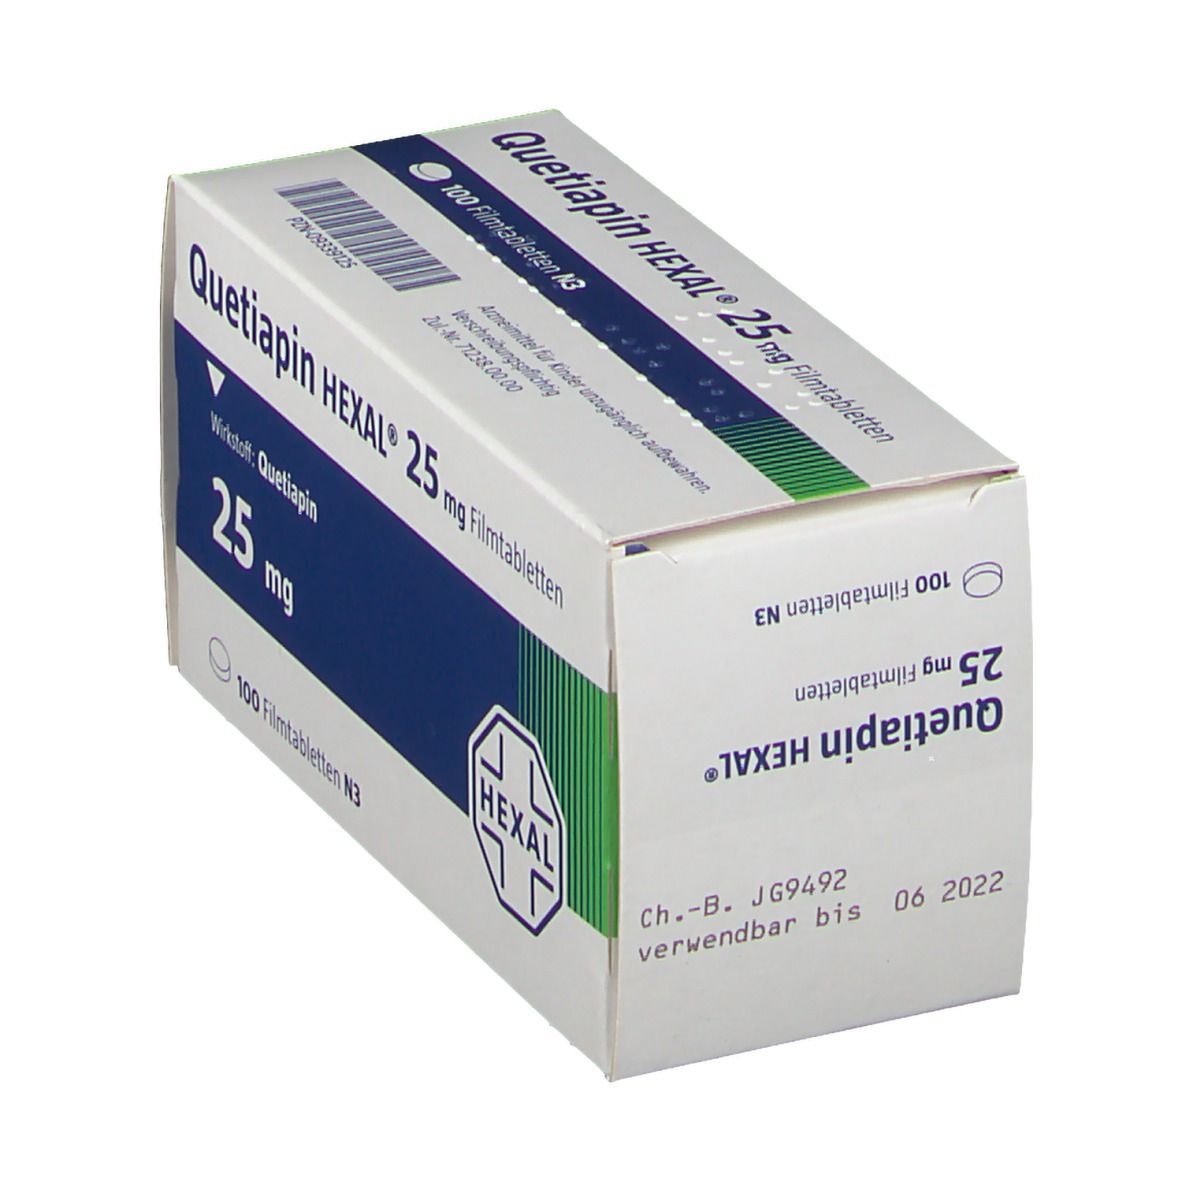 Quetiapin HEXAL® 25 mg